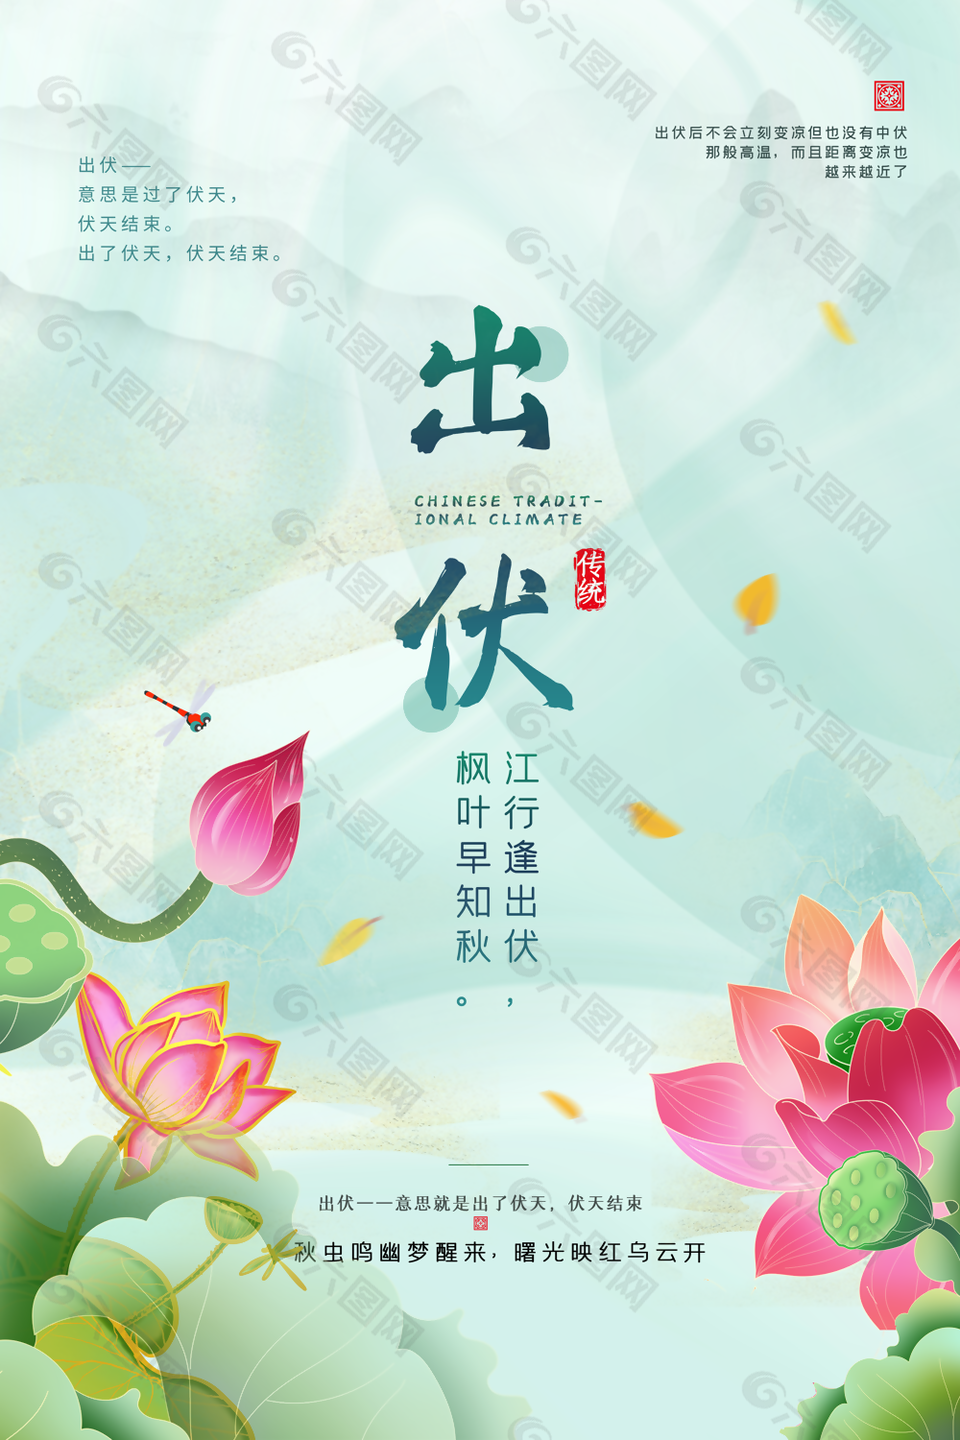 古典荷花背景中国传统节气出伏海报图下载